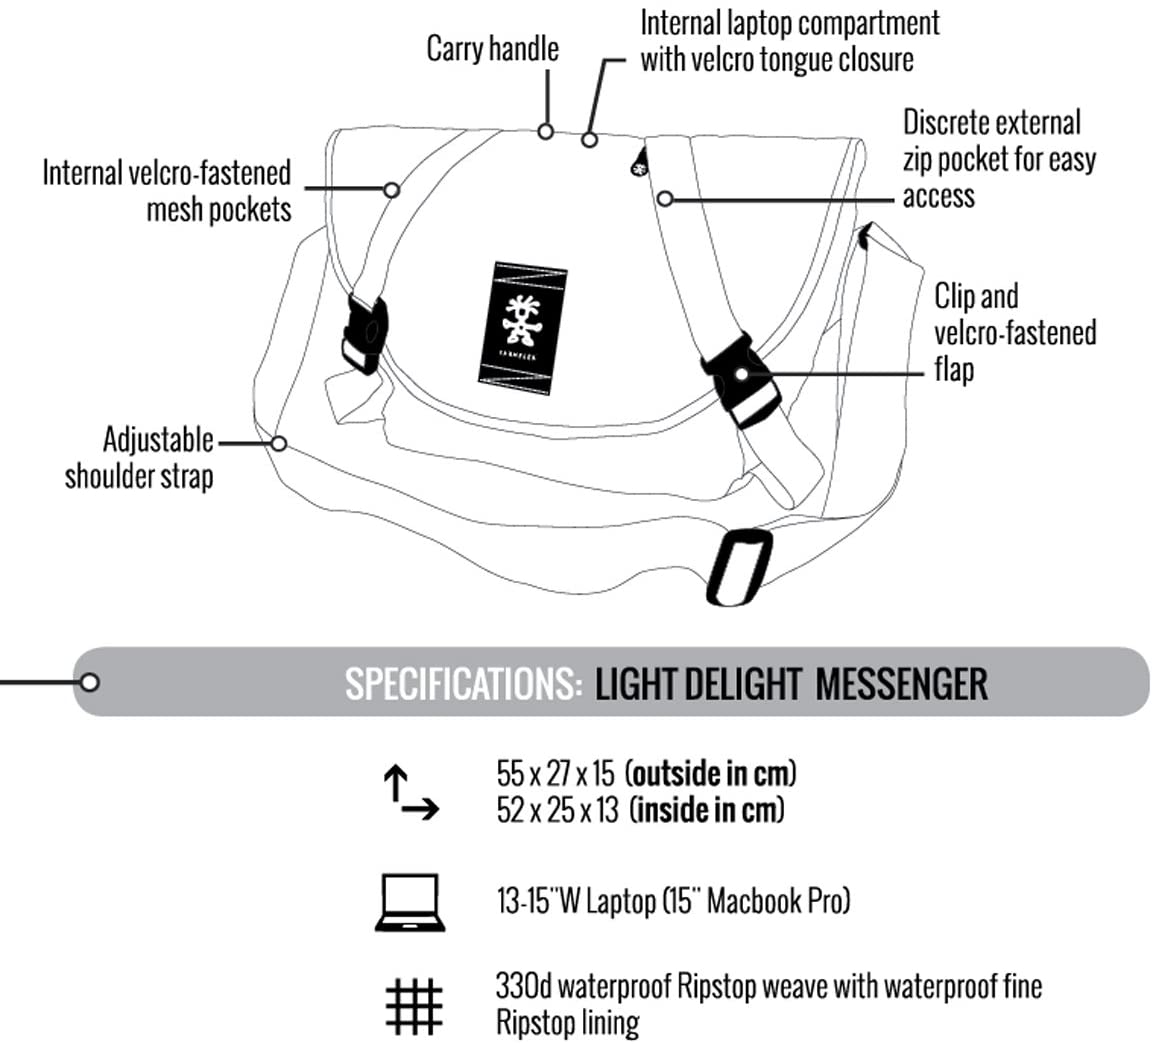 Light Delight Messenger diagram